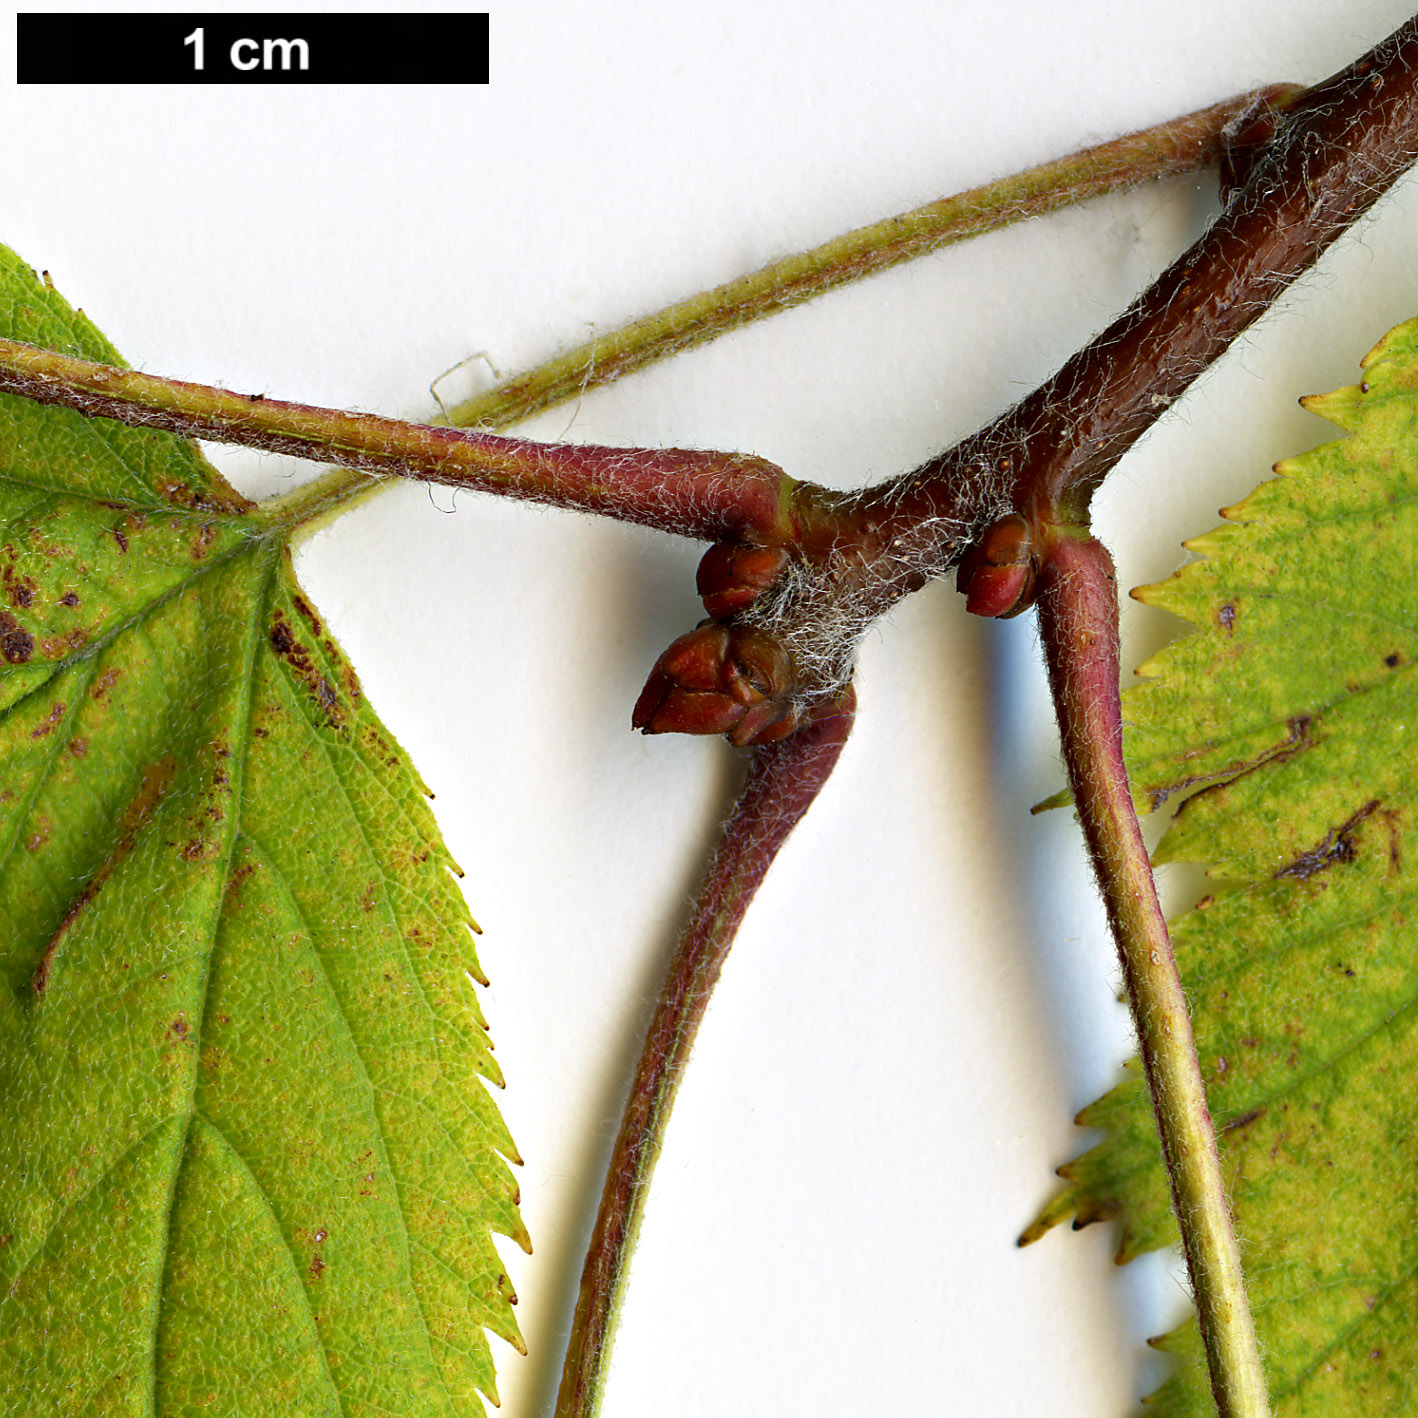 High resolution image: Family: Rosaceae - Genus: Crataegus - Taxon: pennsylvanica